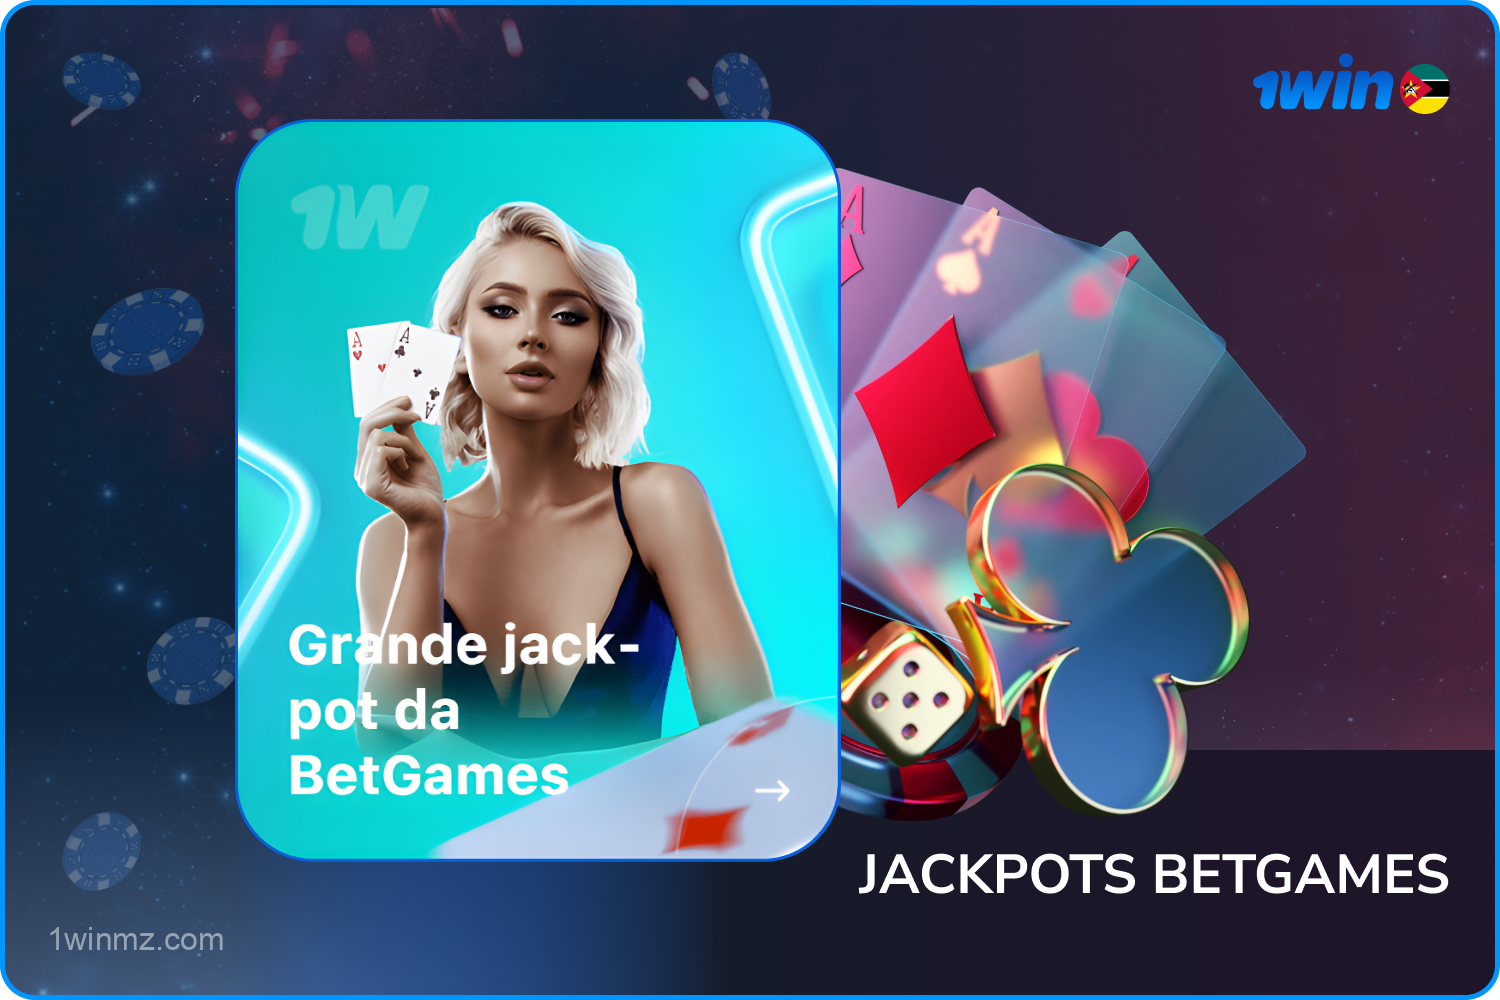 Os usuários moçambicanos do 1win podem ganhar o jackpot jogando no BetGames